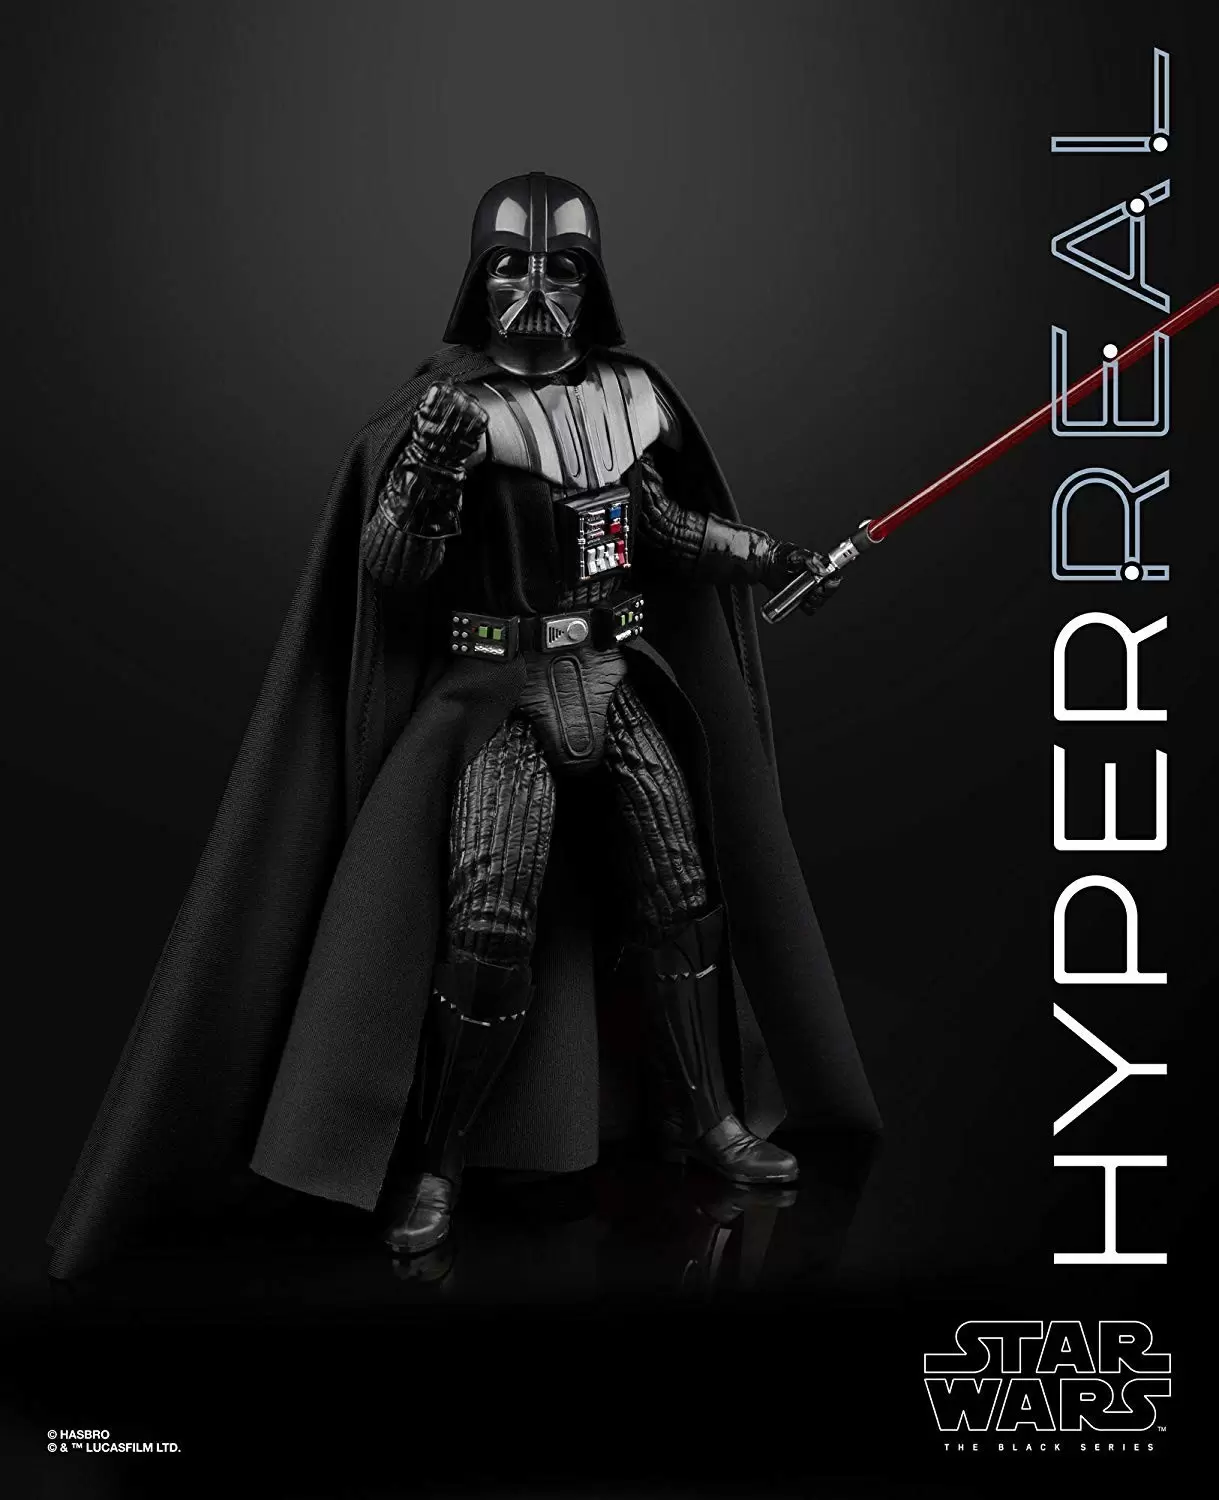 Star Wars the Black Series Hyperreal Luke Skywalker Action Figure,  Accessories 